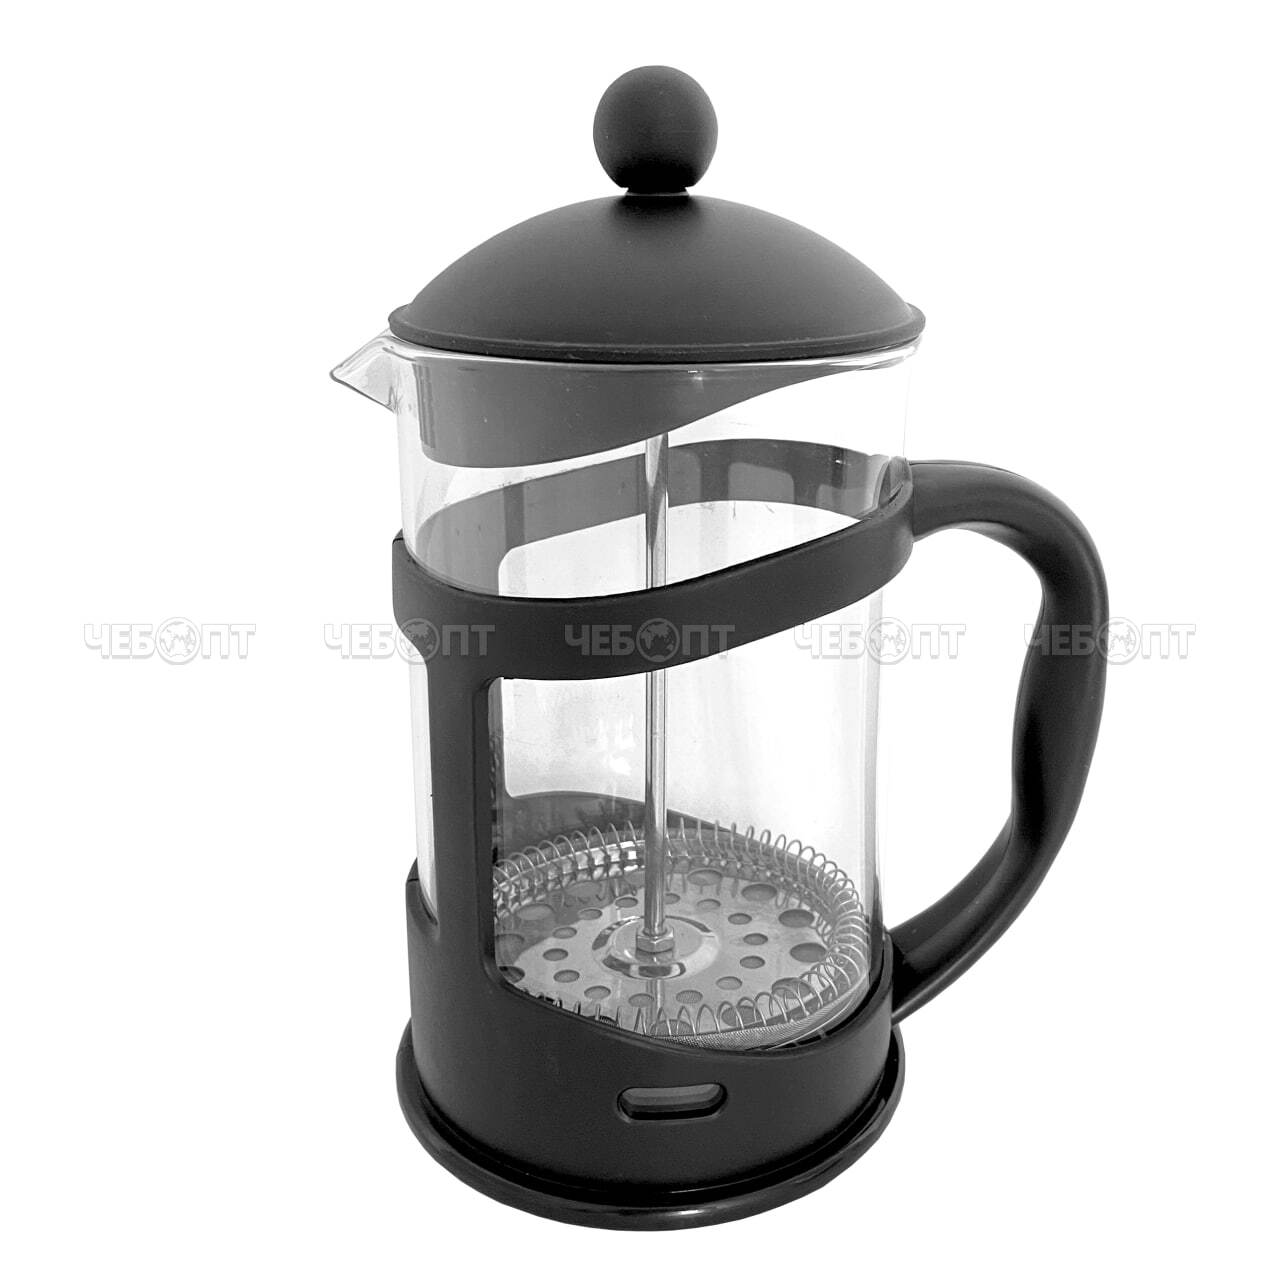 Чайник / кофейник френч-пресс 350 мл MYC-1 жаропрочное стекло, корпус пластмассовый, стальной фильтр арт. 260158 $ [40] GOODSEE. ЧЕБОПТ.